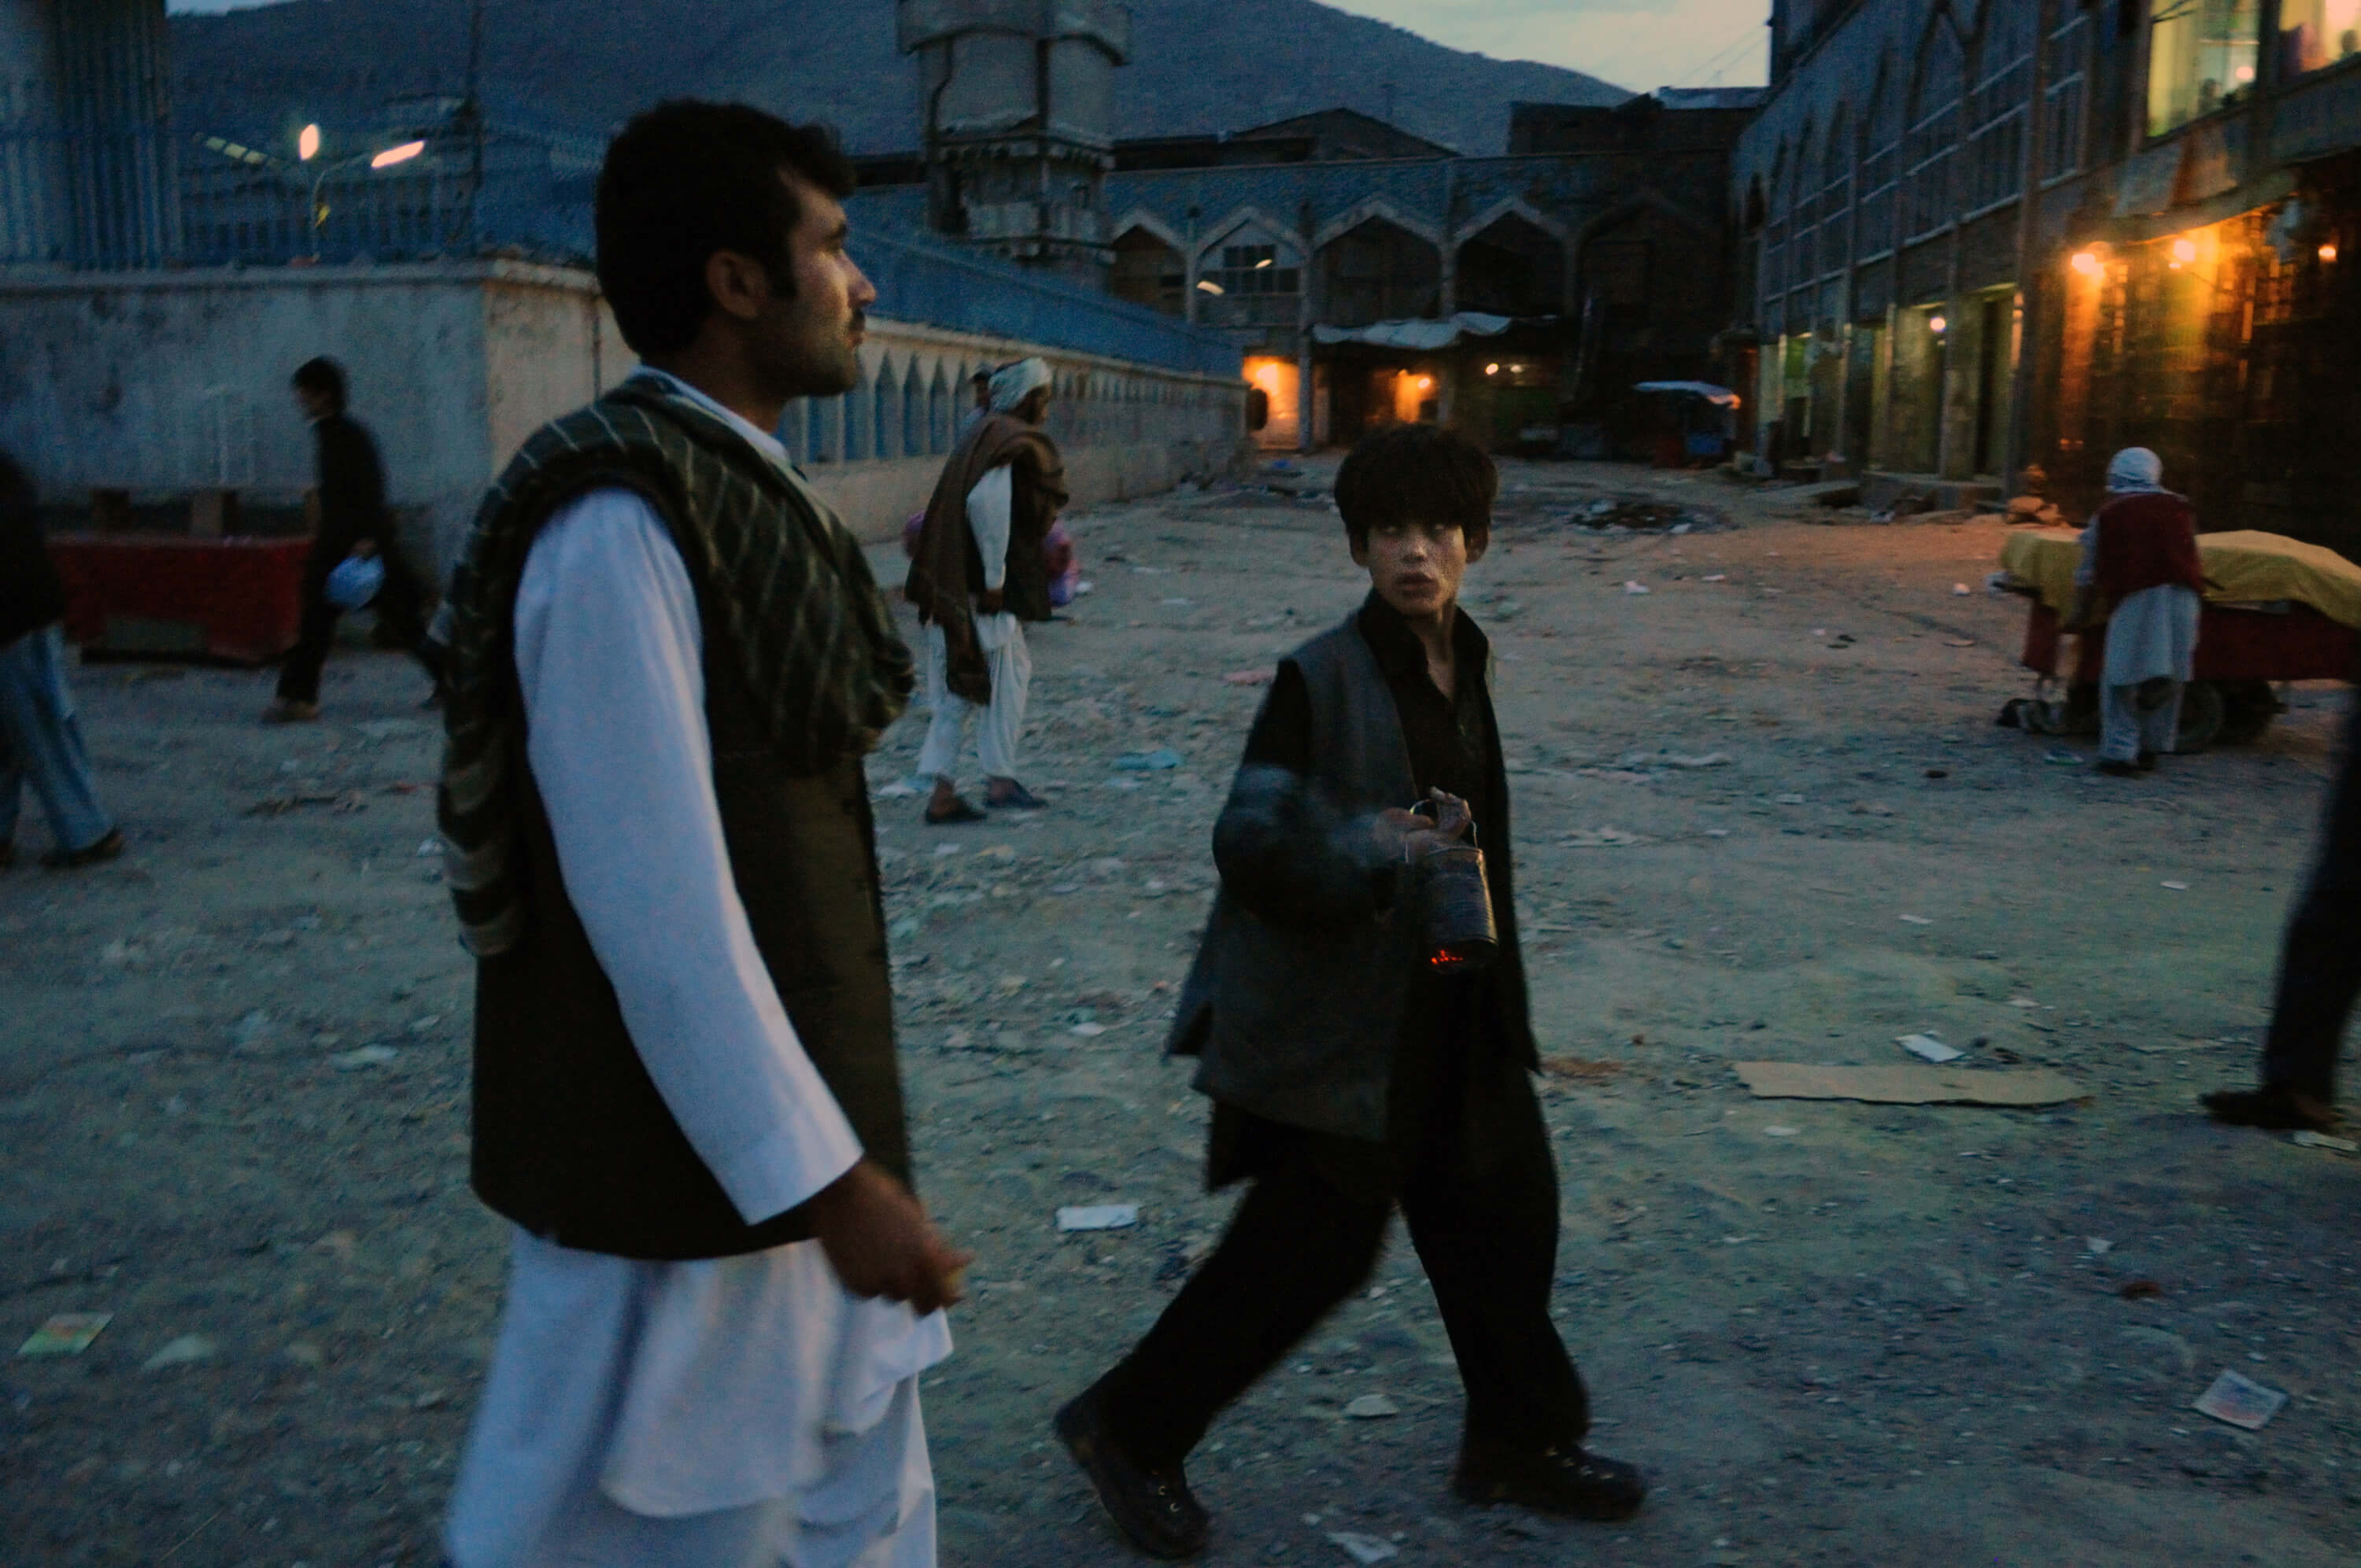 Танцующие мальчики афганистана бача-бази Барат Али Батур